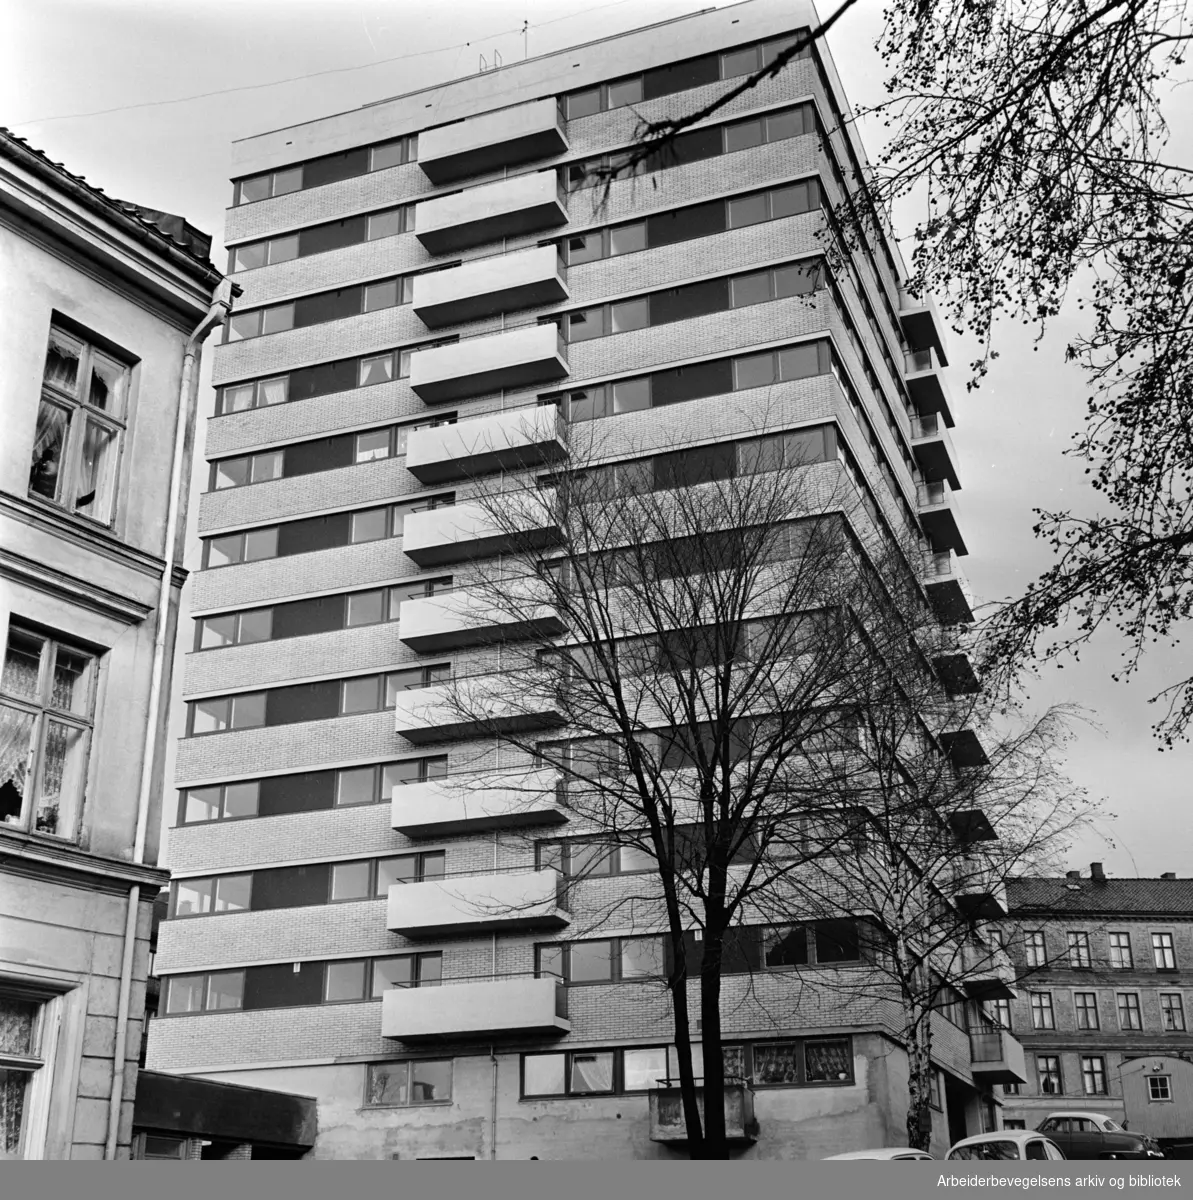 Hølandsgata 1. Norsk-Tsjekkoslovakisk Hjelpeforening og Studentskipnadens bygg for flyktninger og studenter..Oktober 1961